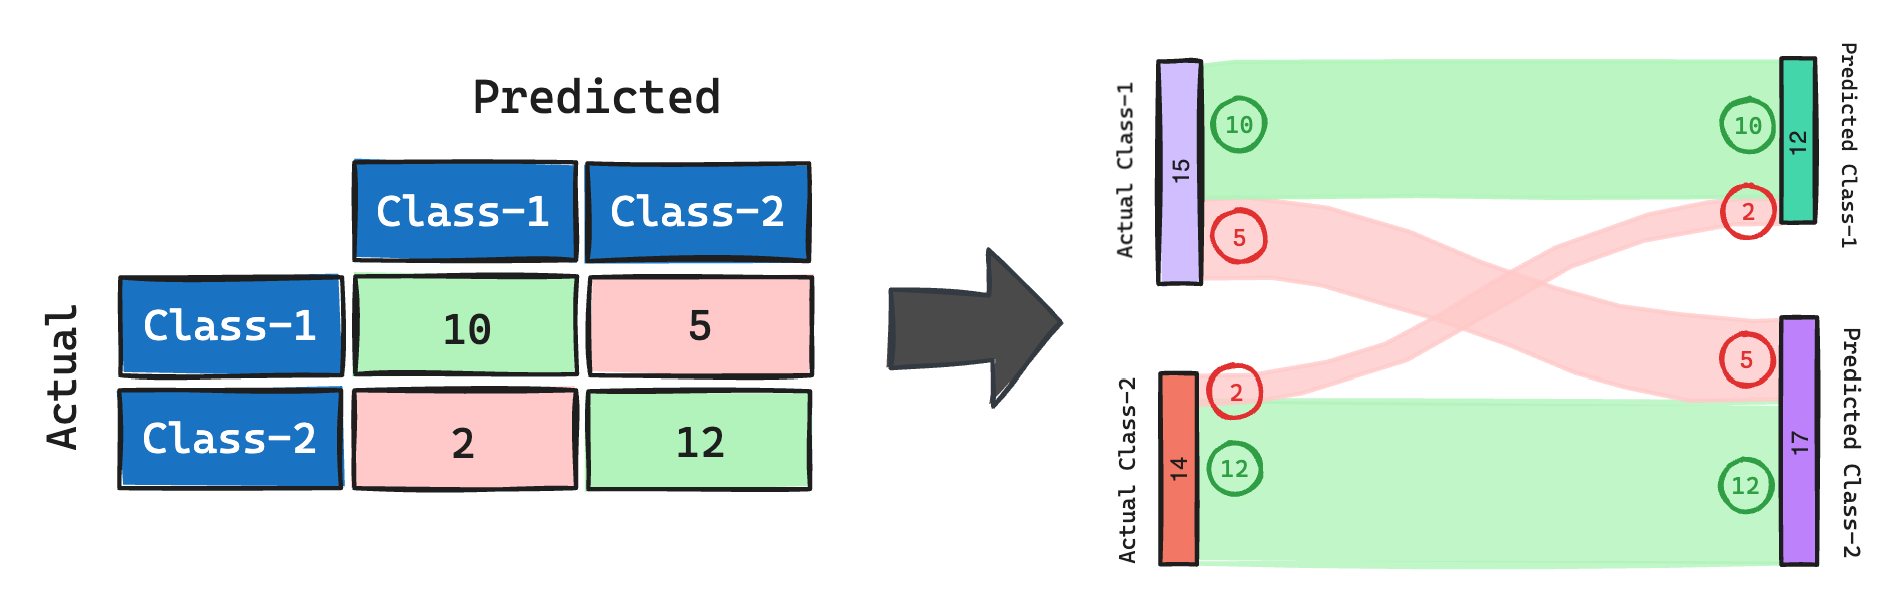 Representing a confusion matrix using a sankey diagram.